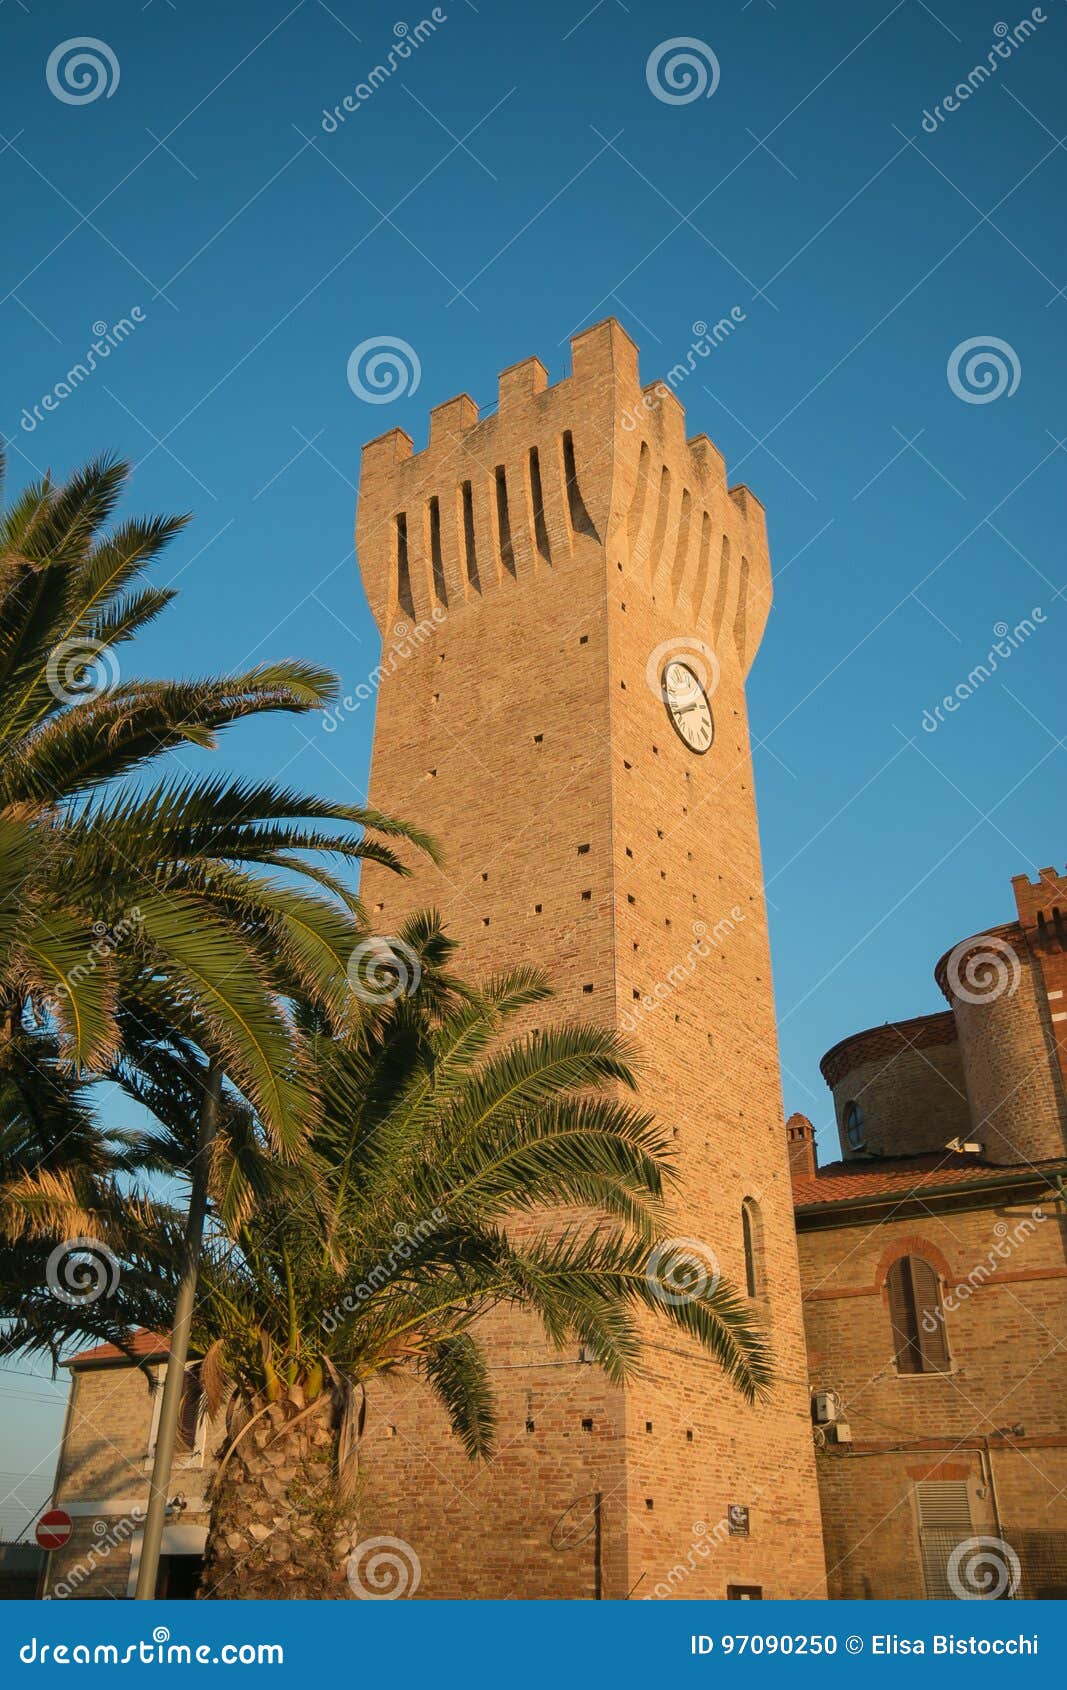 tower in the historic center of porto potenza picena